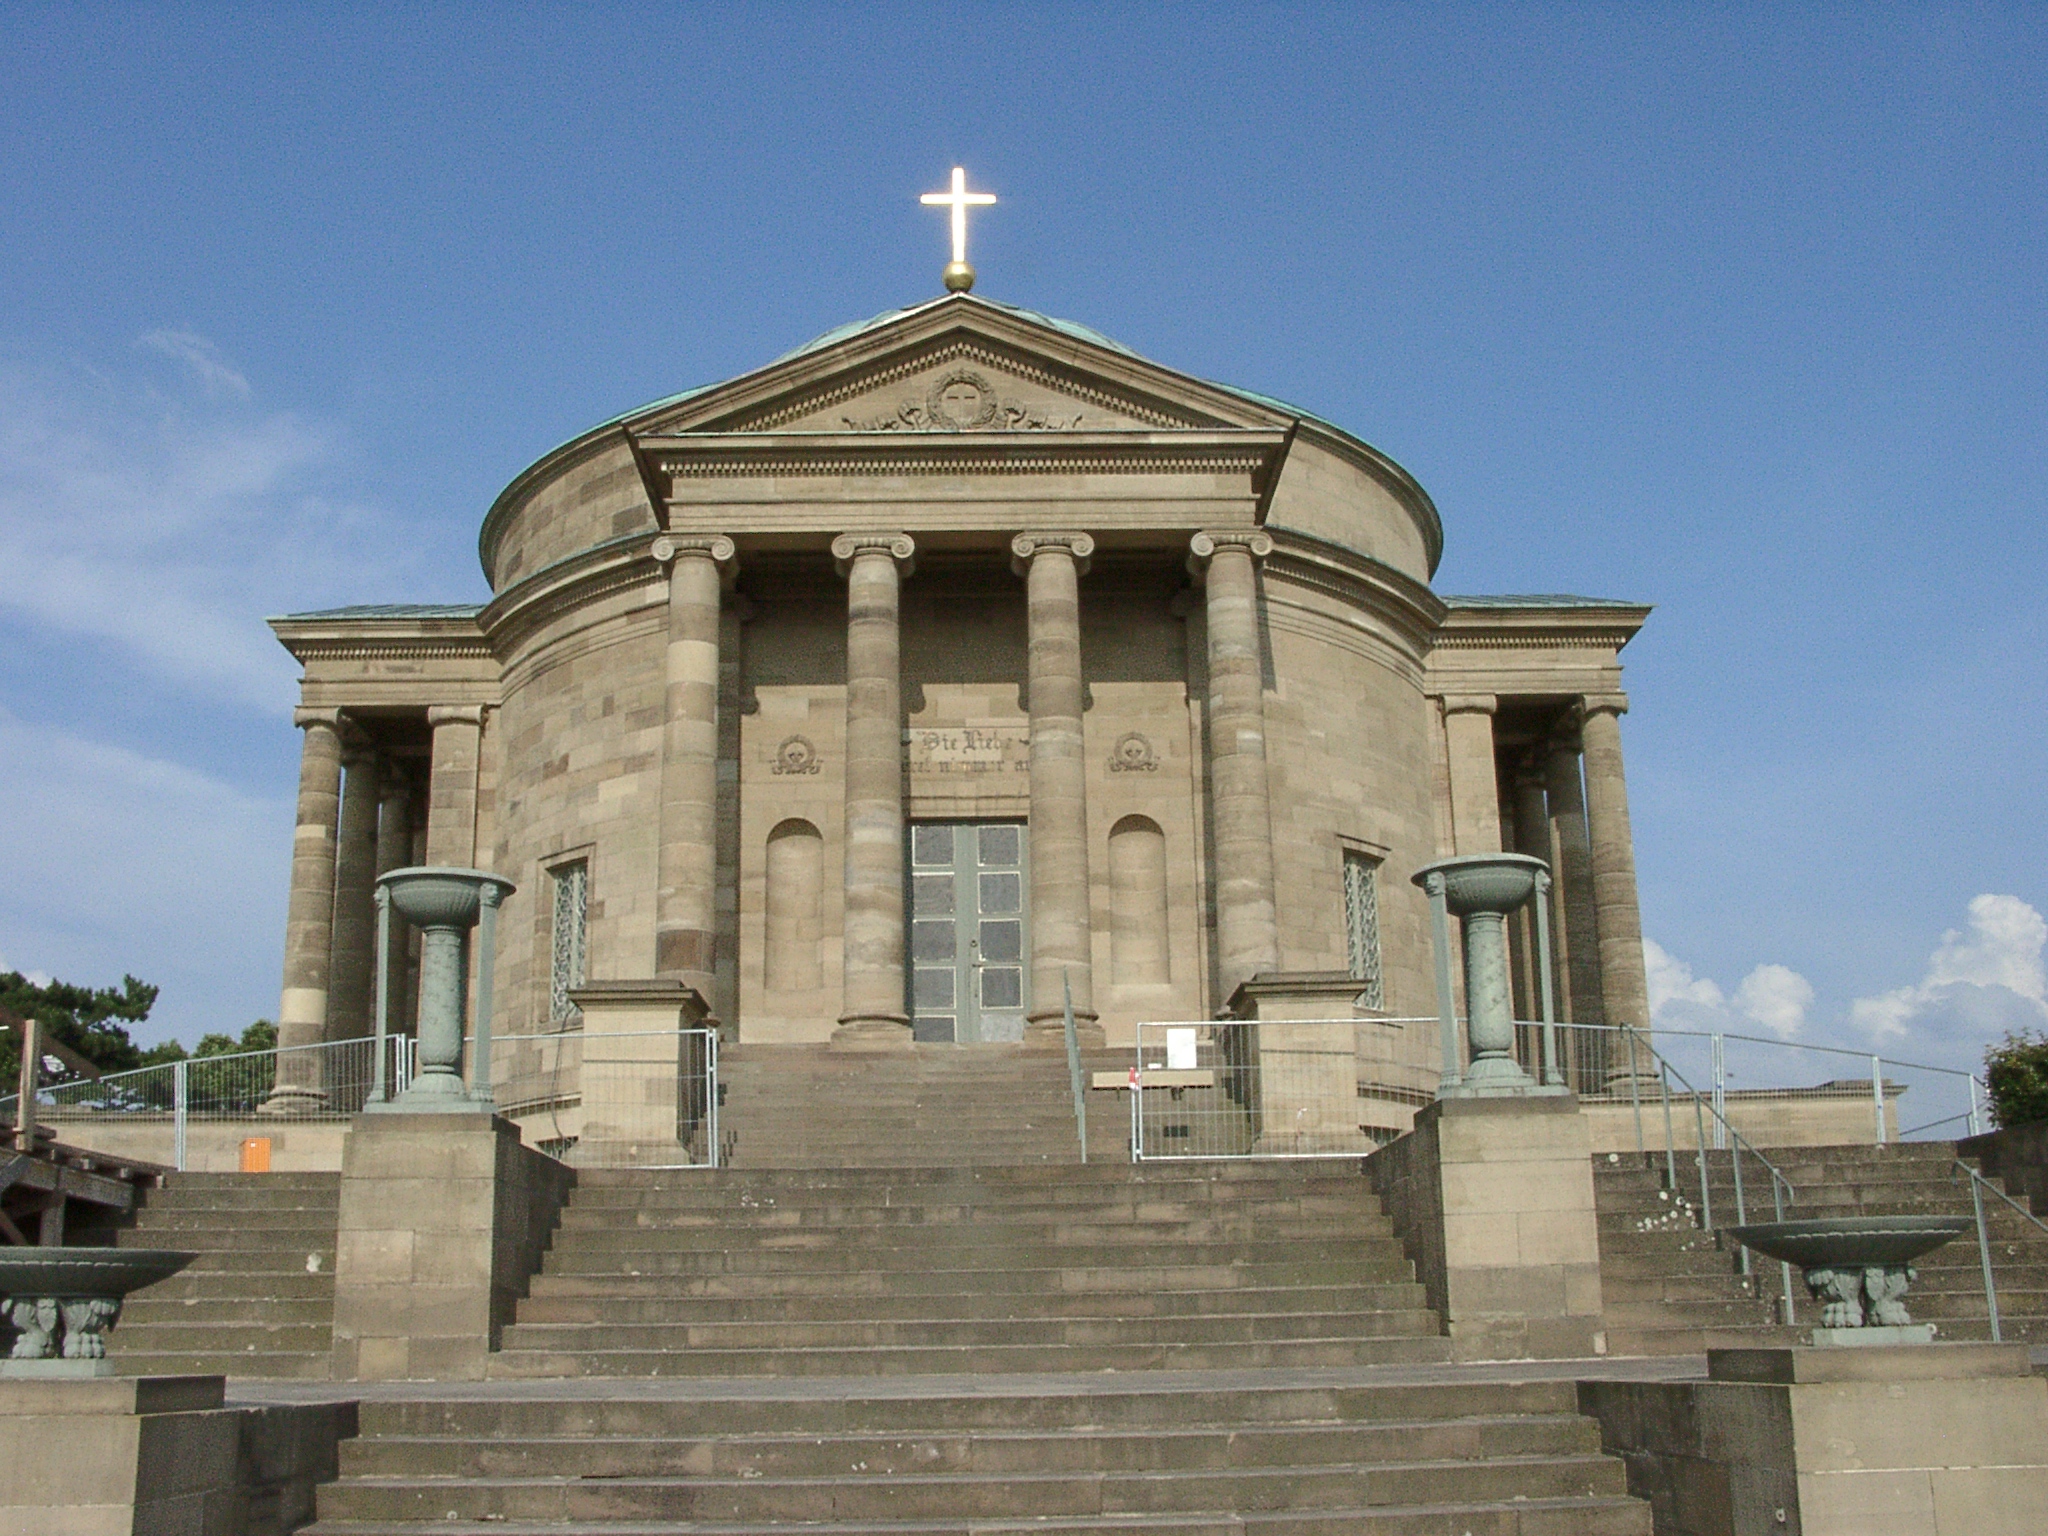 Grabkapelle